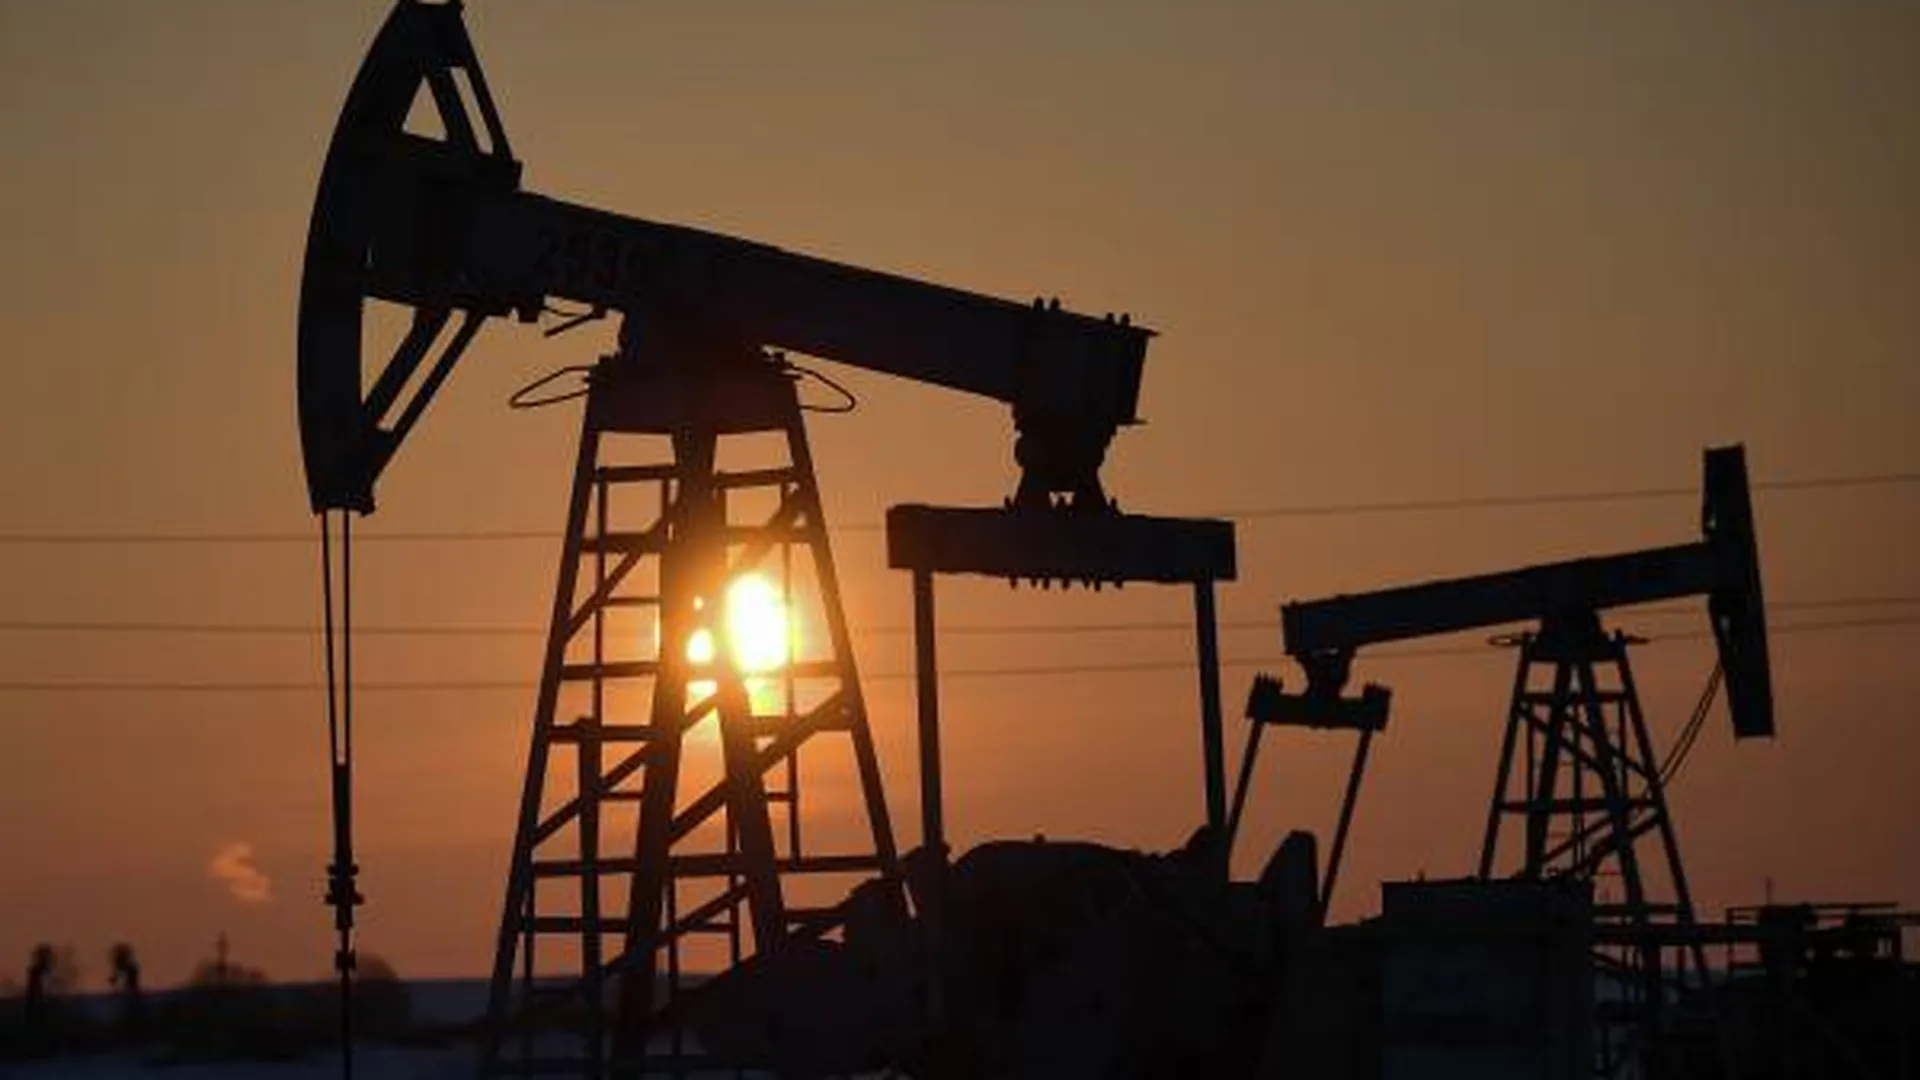 G7 хотят полностью запретить экспорт нефти из России. Достаточно для того, чтобы рынку поплохело